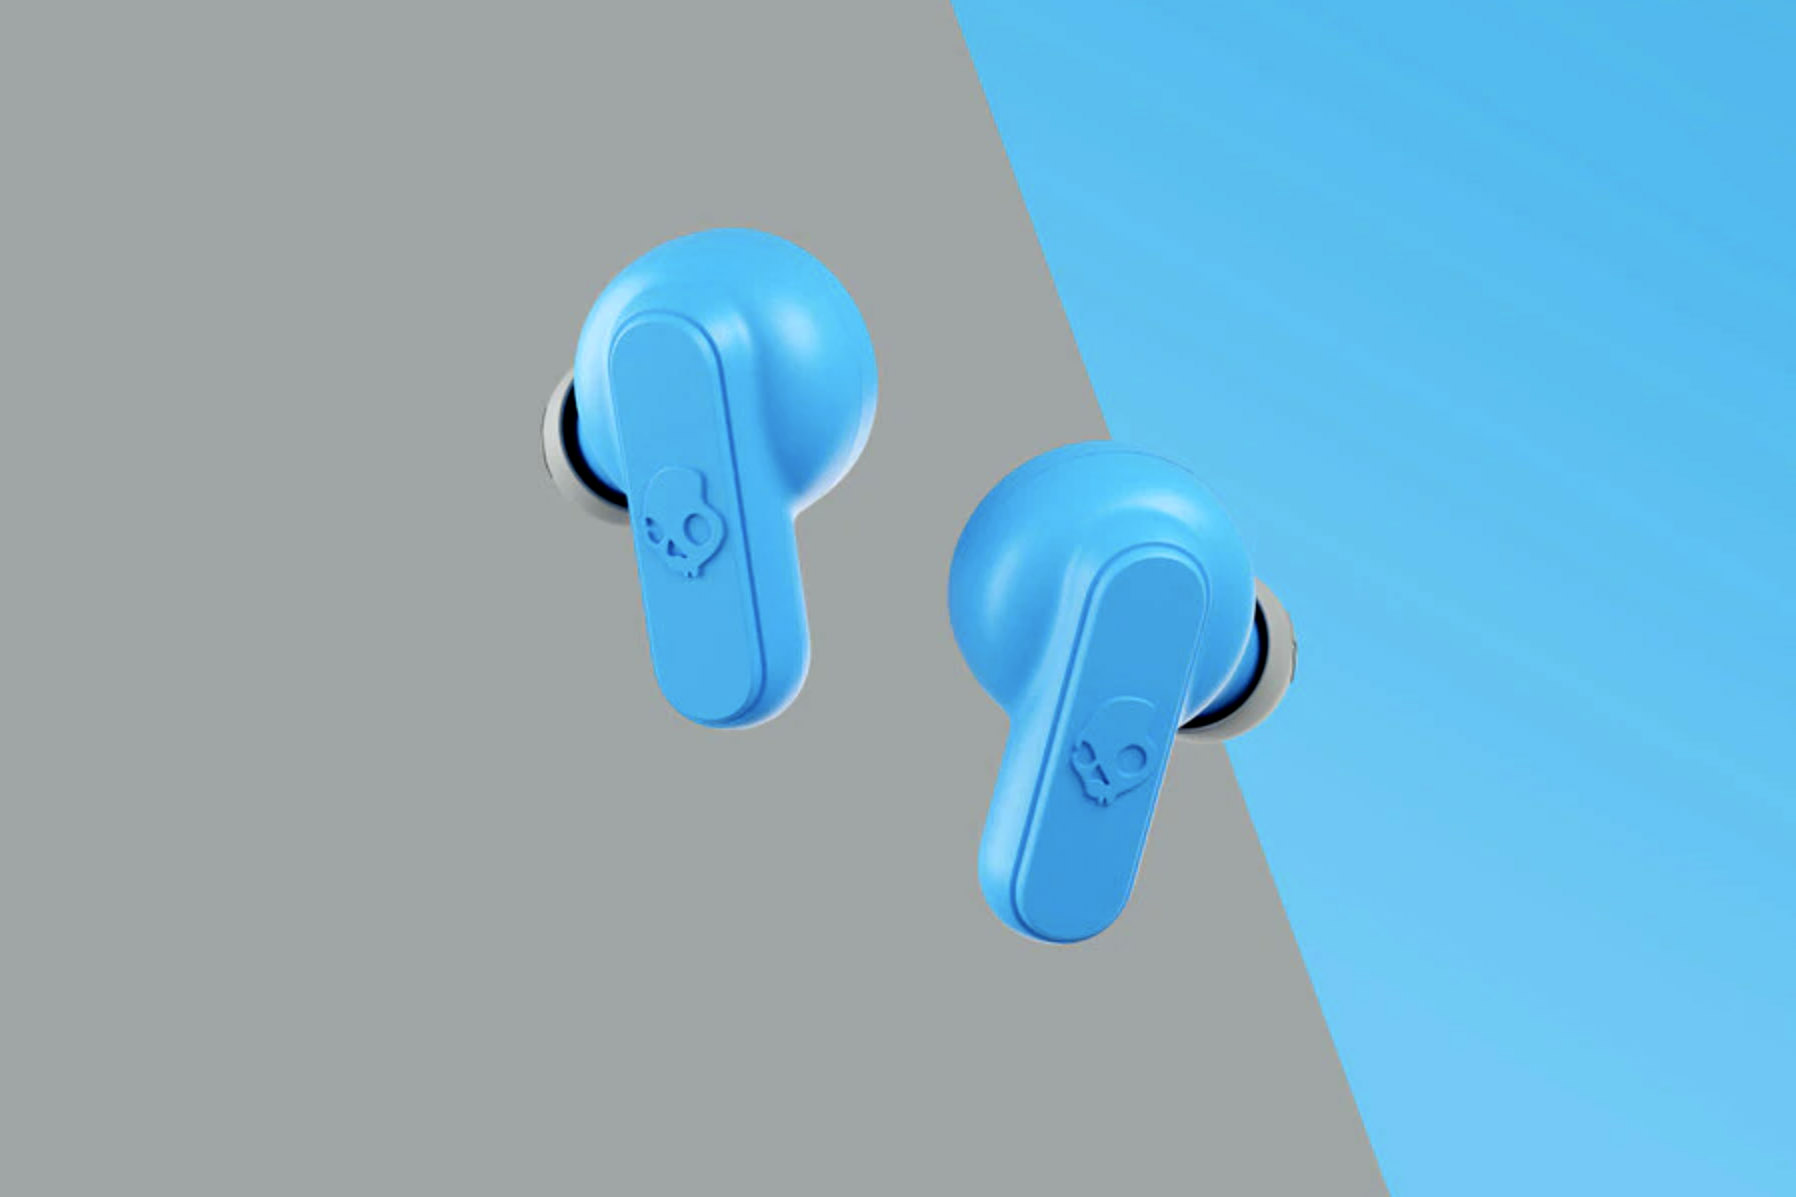 skullcandy dime wireless earbuds blue